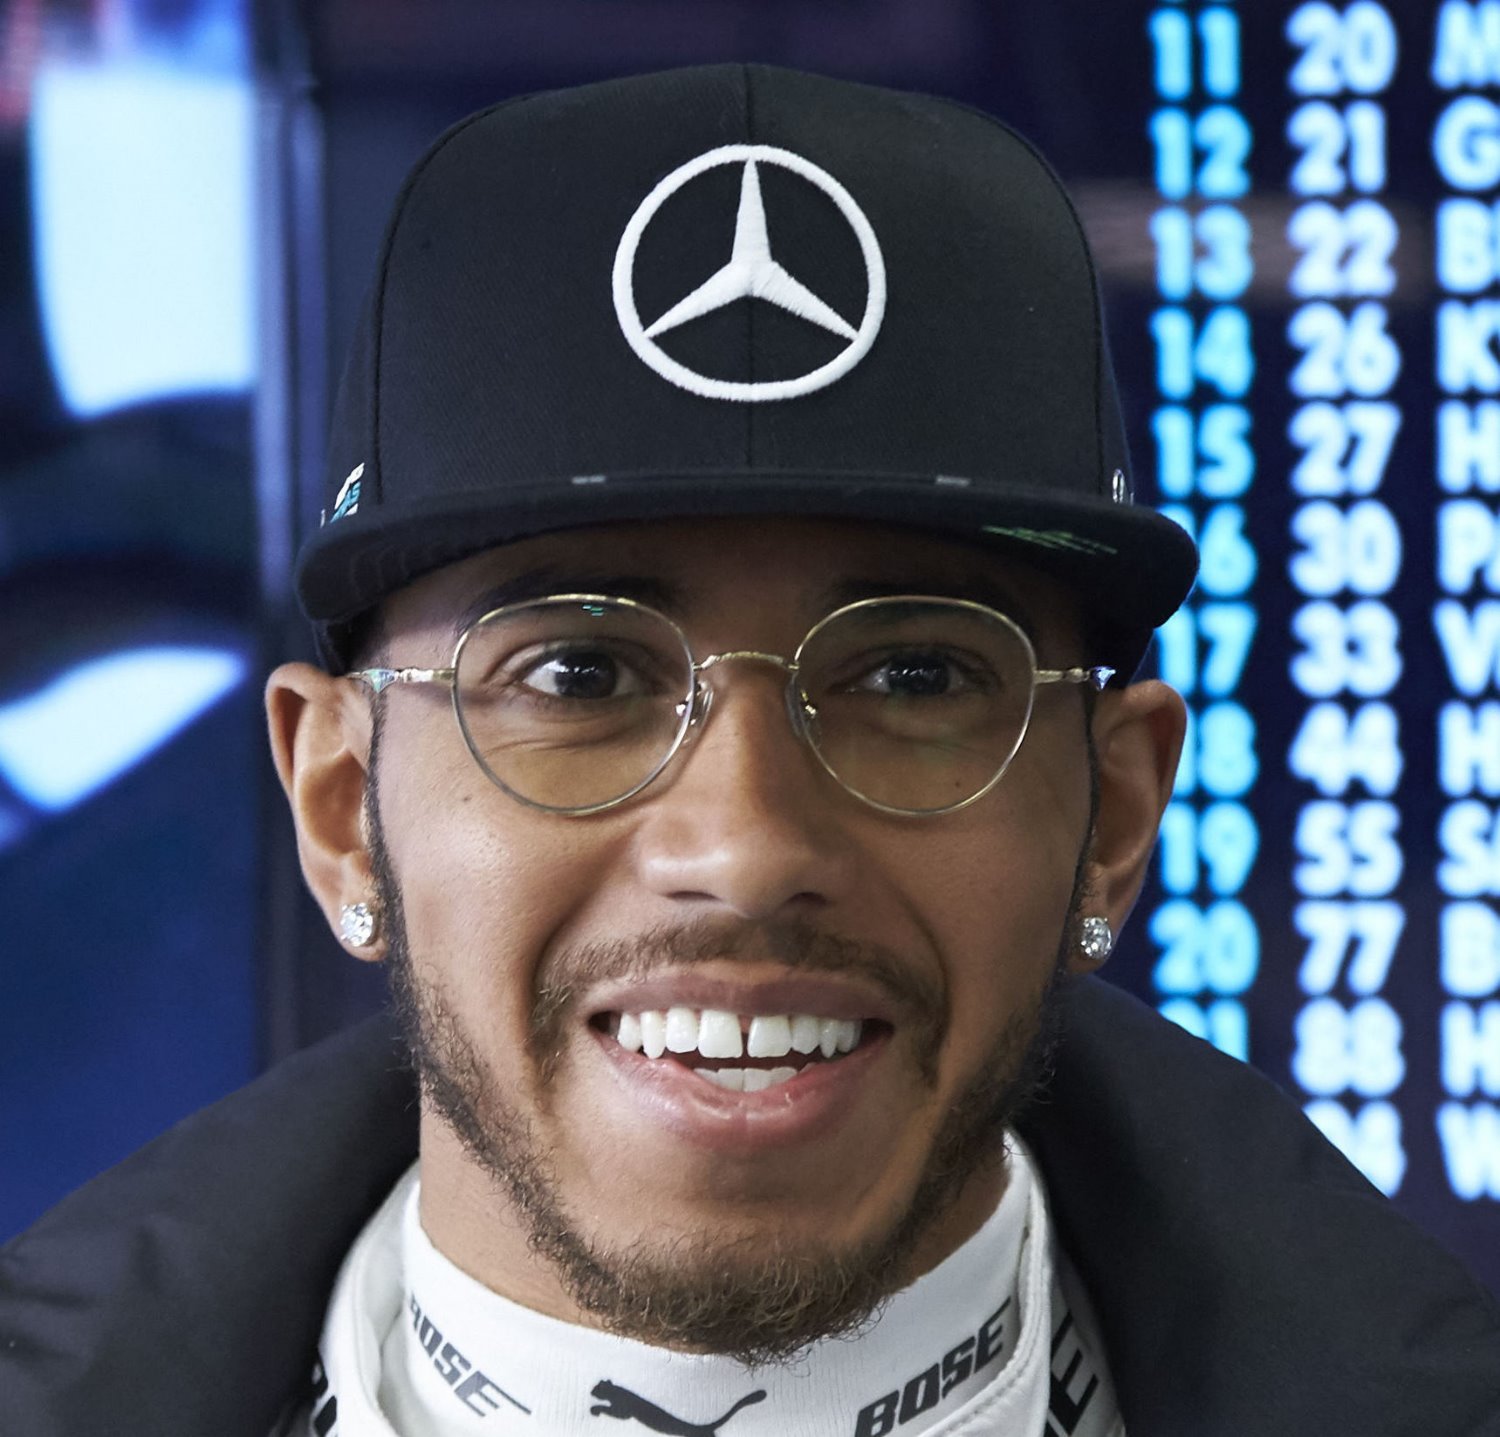 Lewis Hamilton on top